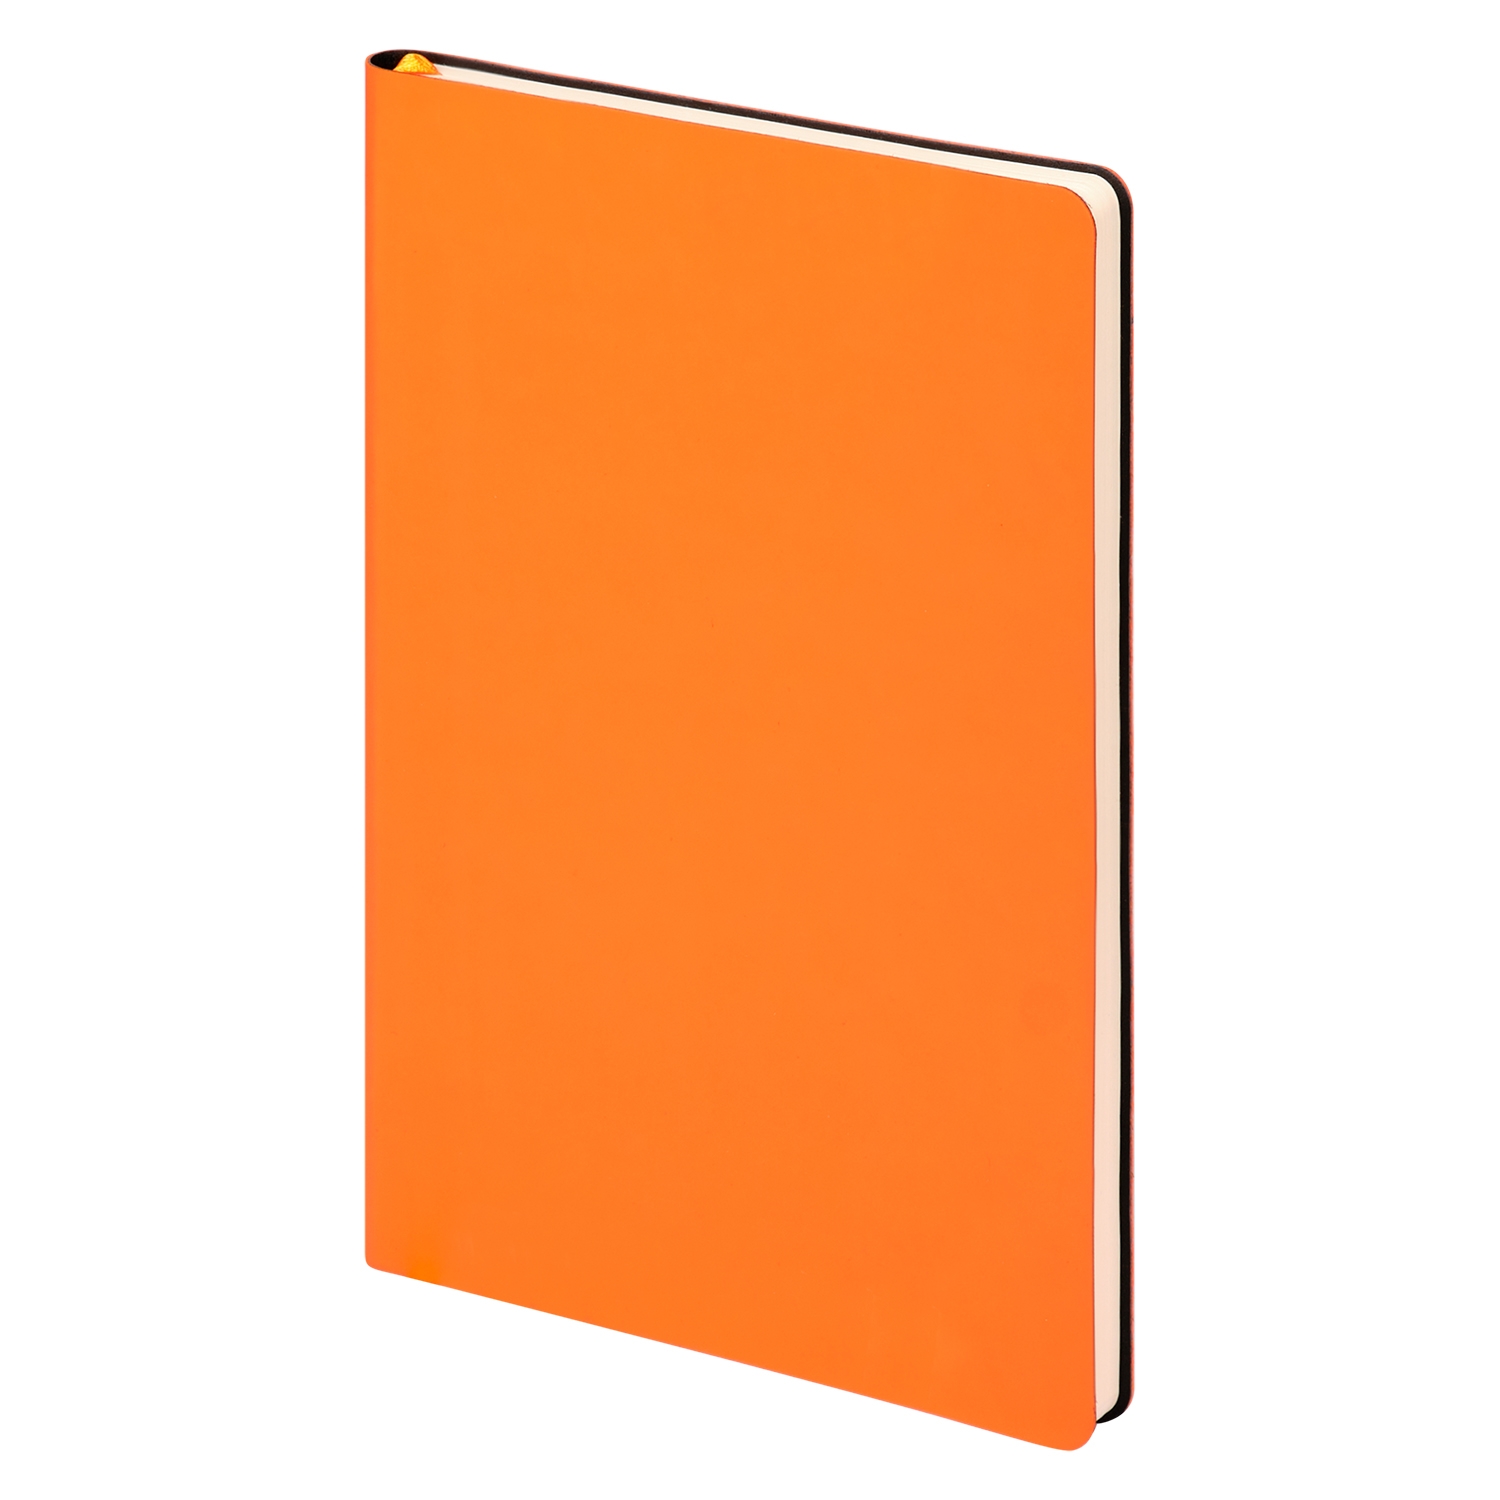 Ежедневник Spark недатированный, оранжевый (без упаковки, без стикера), оранжевый